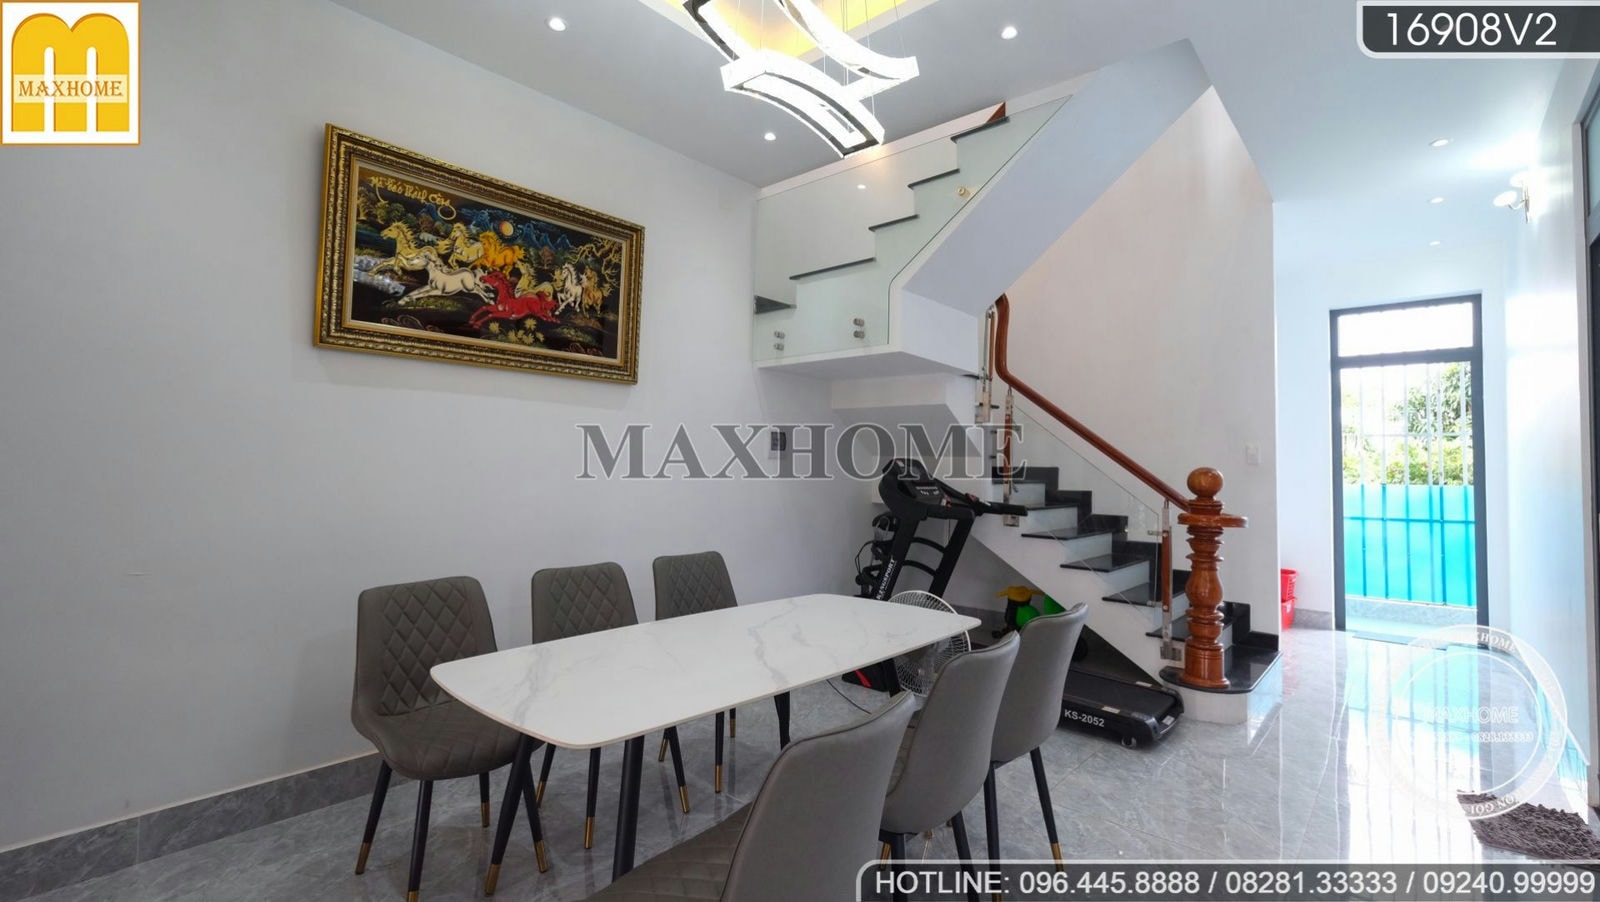 Trọn bộ nội thất hiện đại cực đẹp do Maxhome thi công tại Bình Phước